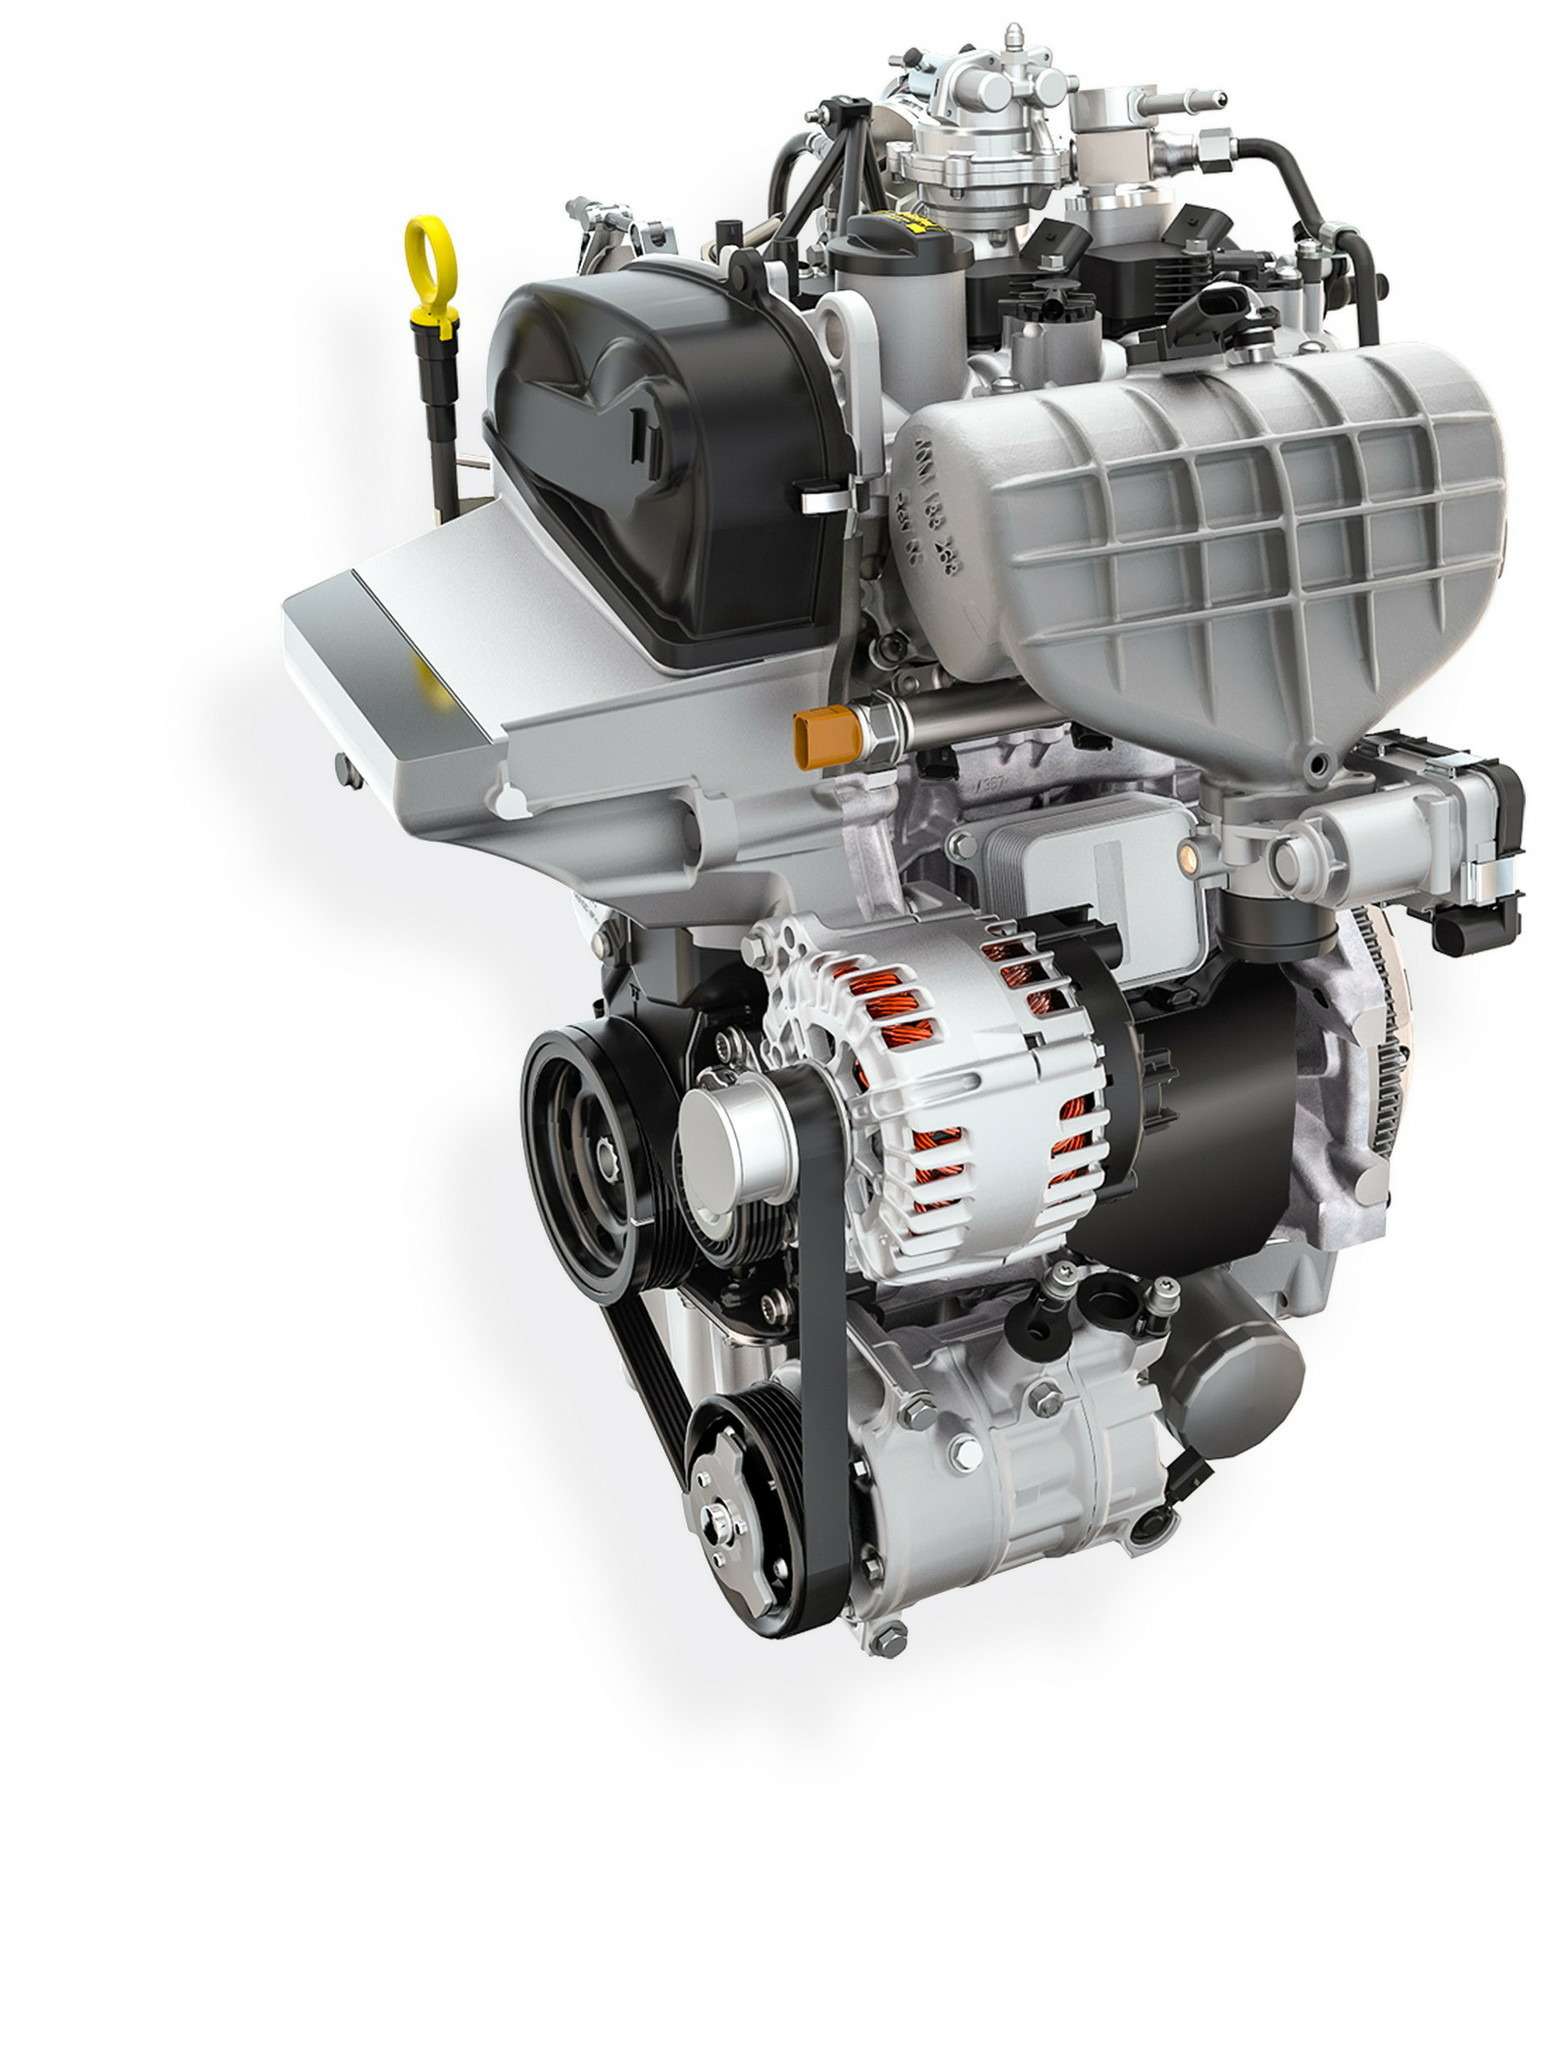 Бензиновый трехцилиндровый двигатель TSI рабочим объемом всего 1,0 л развивает фантастические 272 л.с.